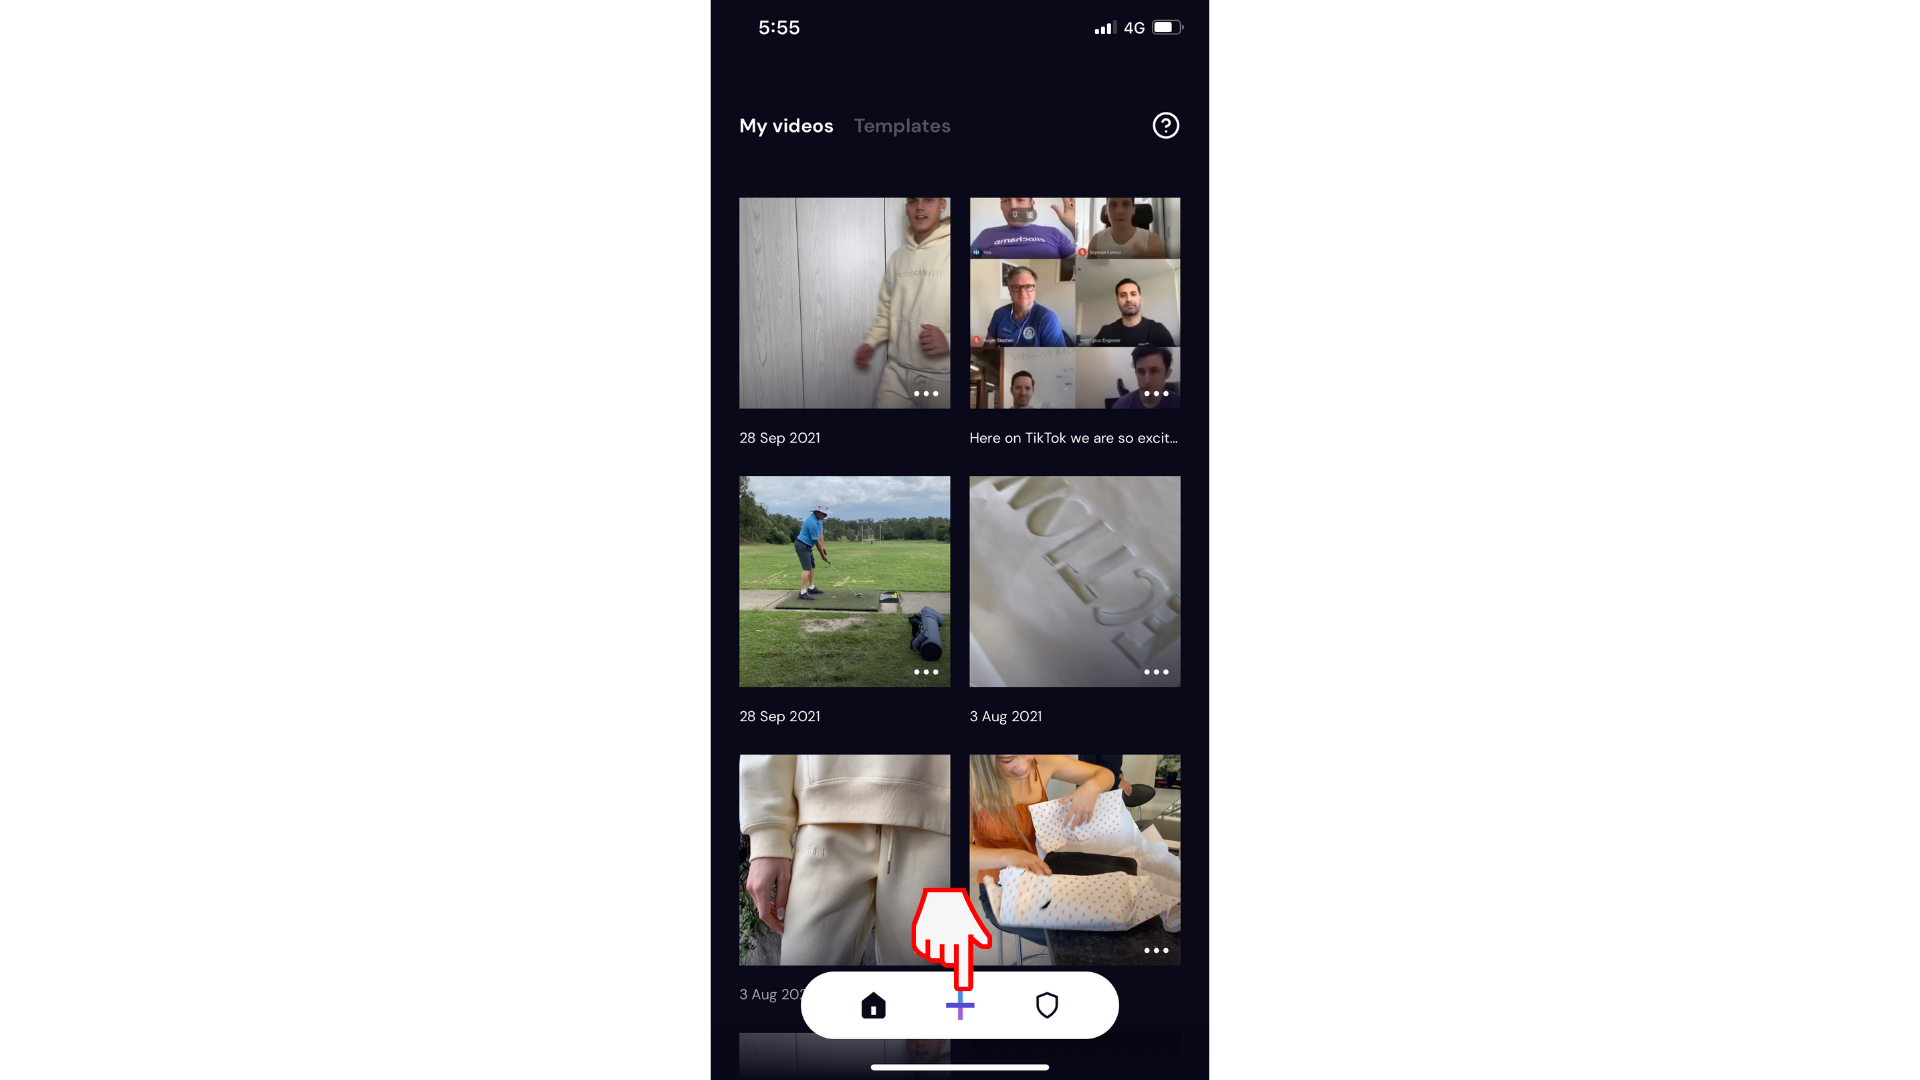 Korisnik kreira novi video zapis na aplikaciji za mobilne uređaje